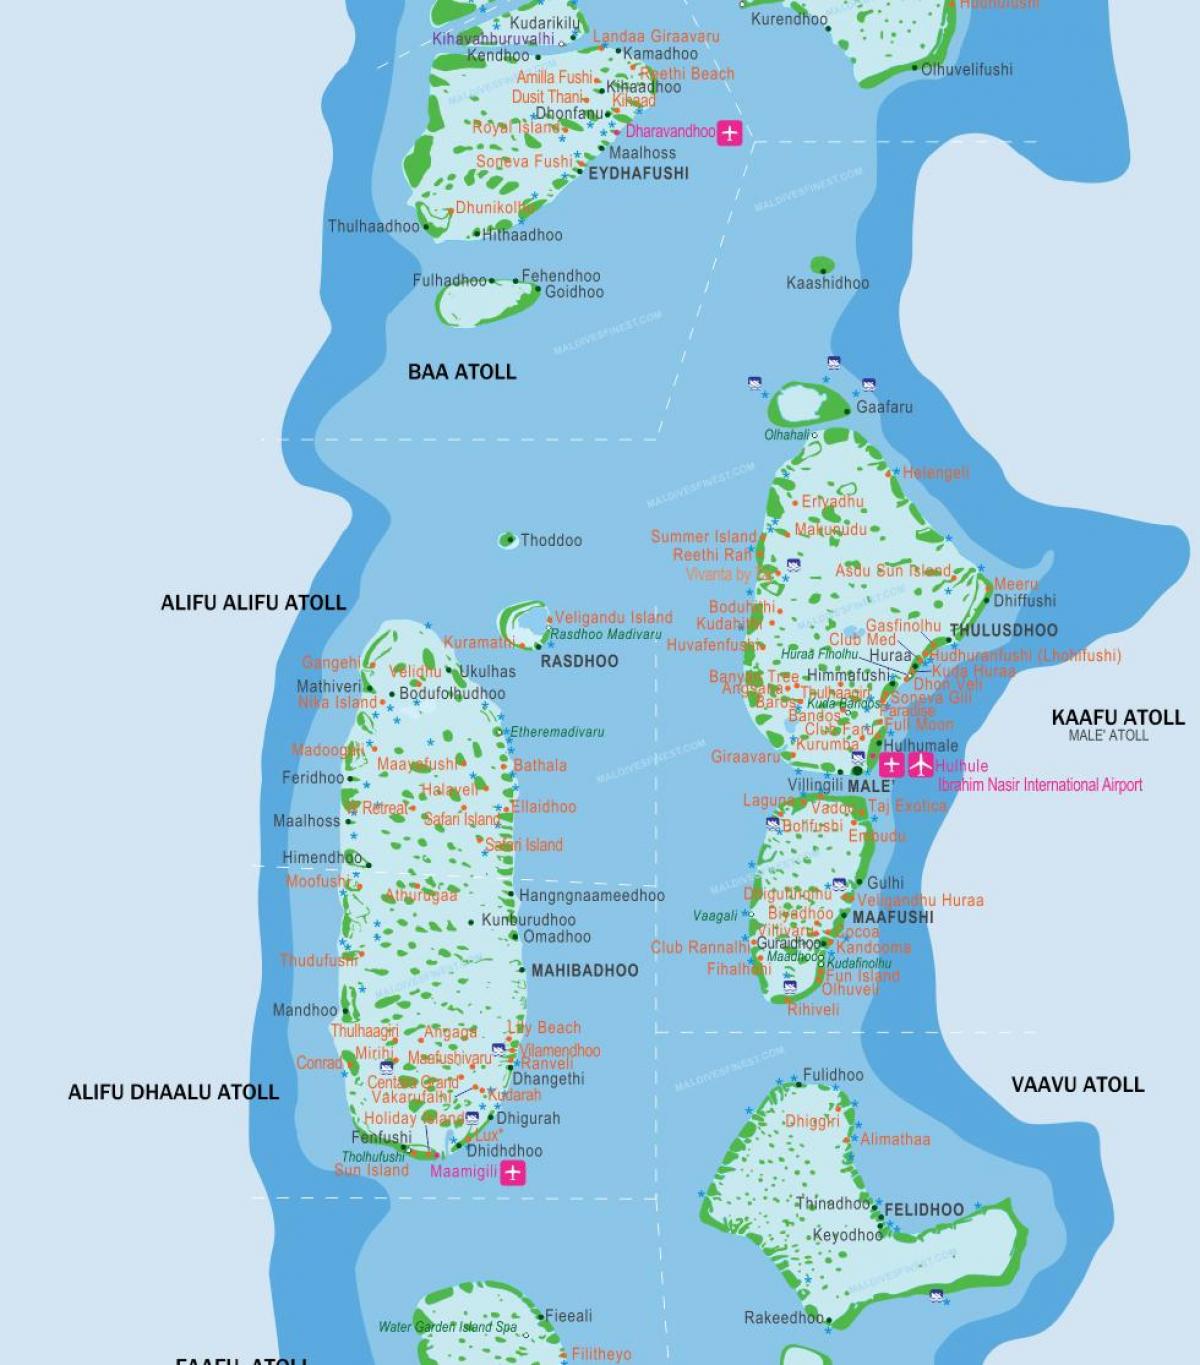 مالدیو فرودگاه نقشه